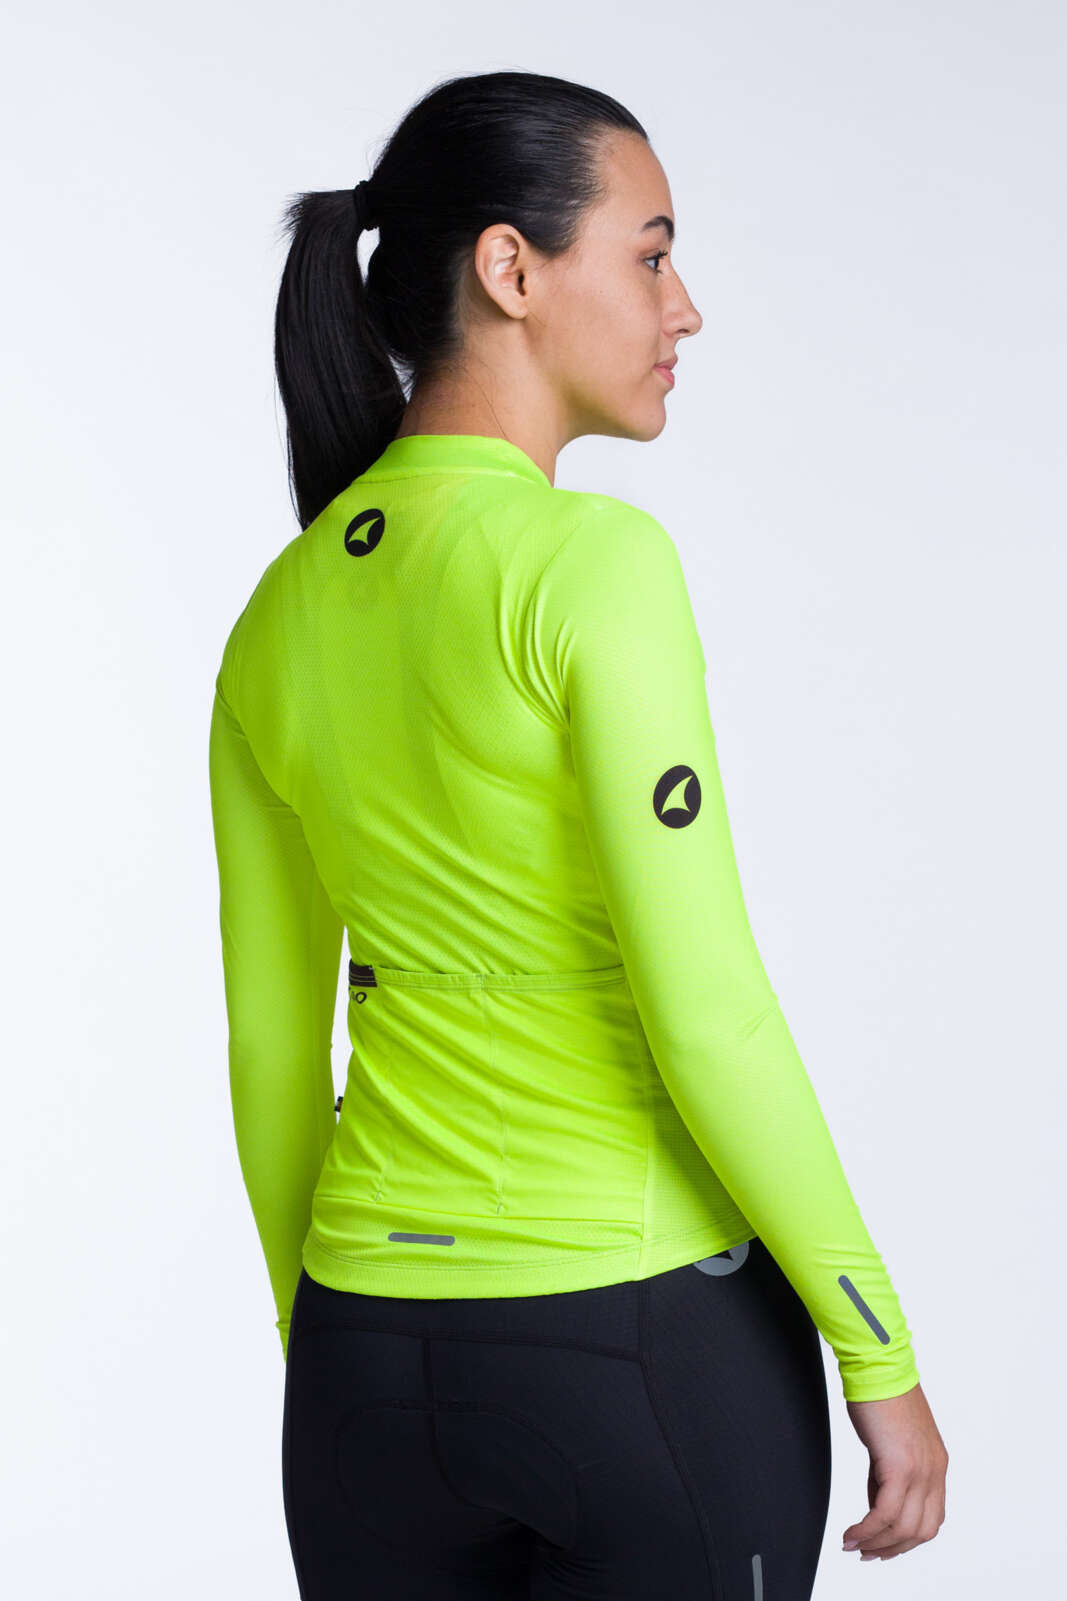 Women's High-Viz Yellow Aero Long Sleeve Cycling Jersey - Back View